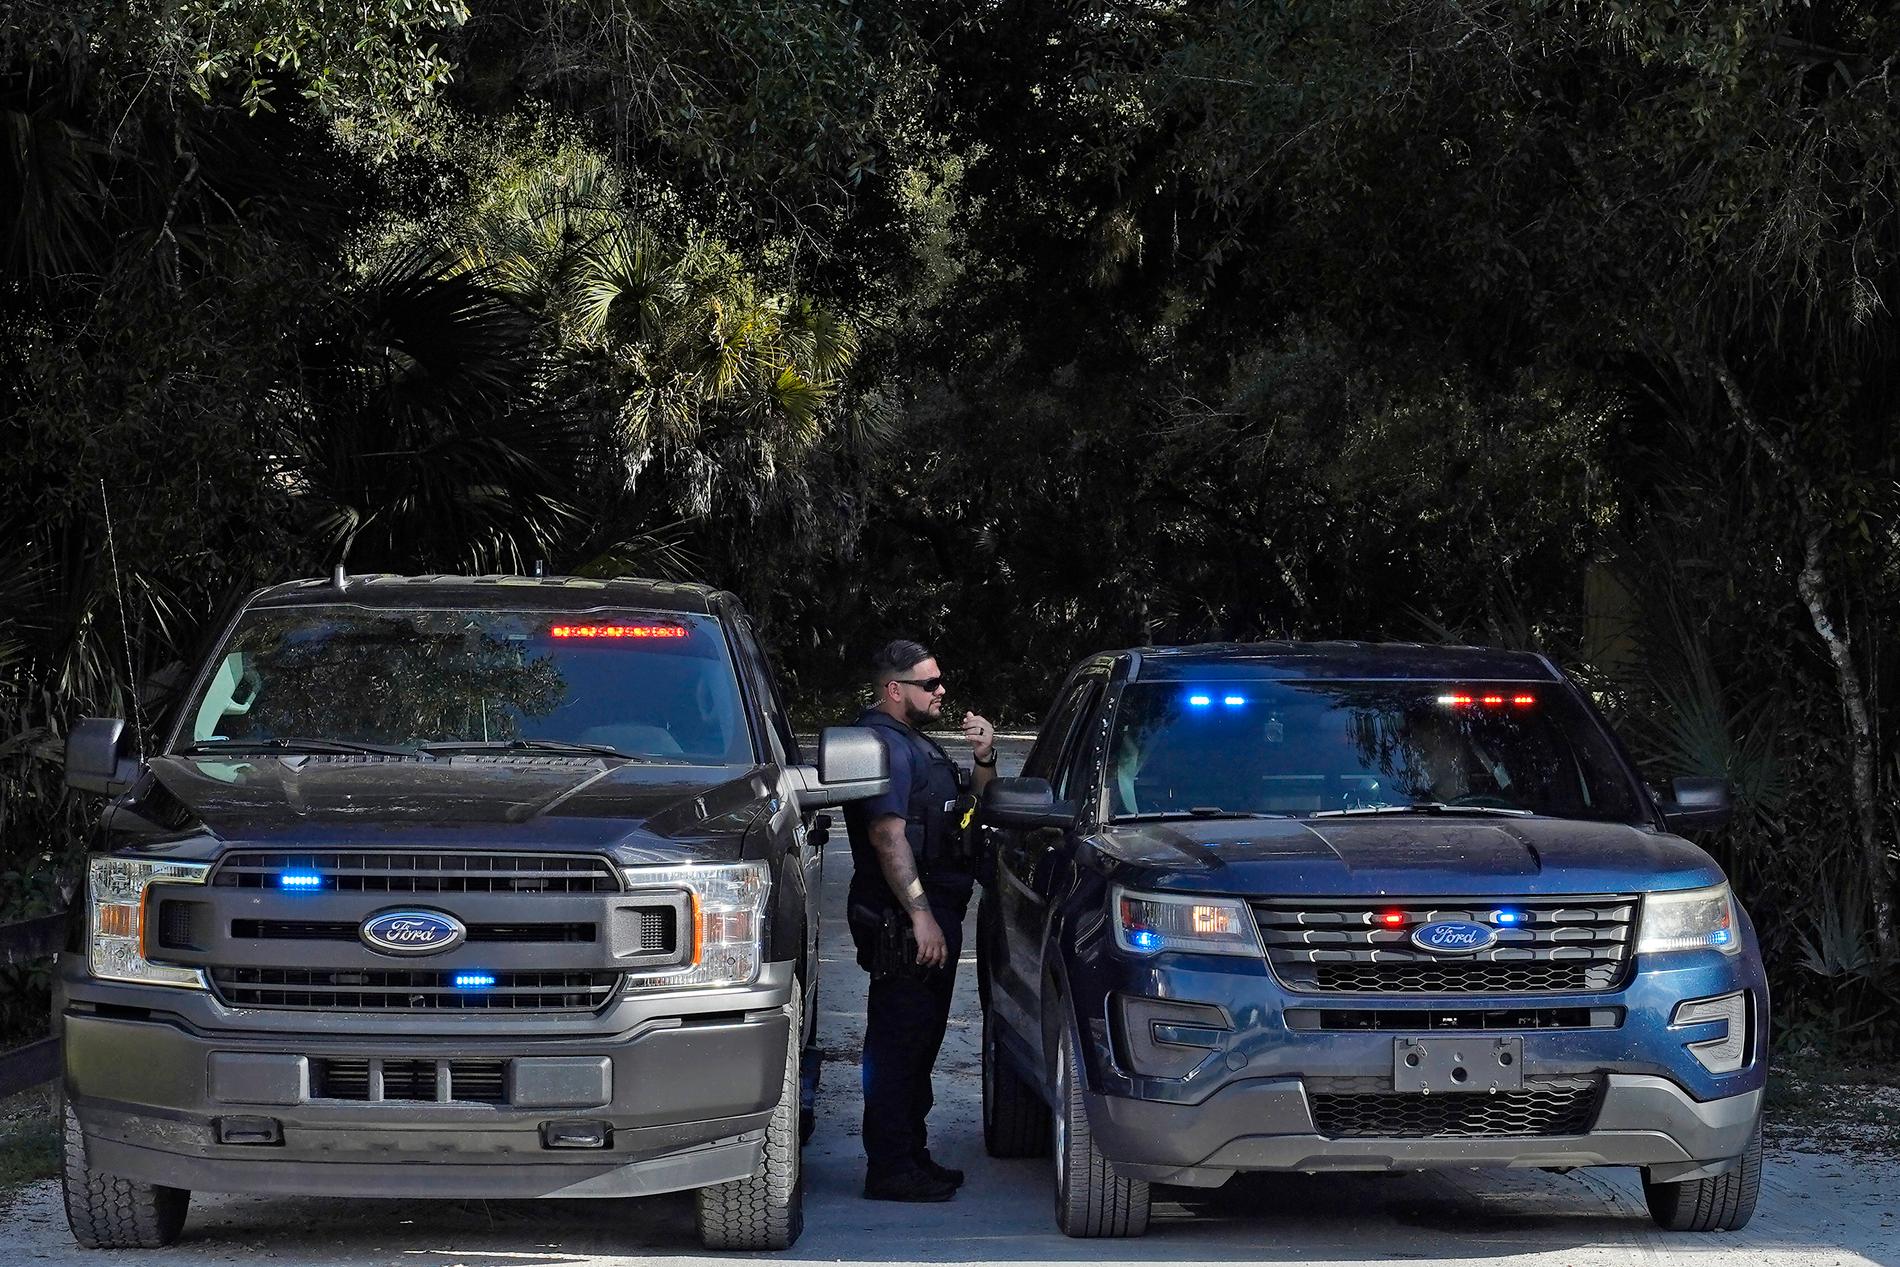 Polispådrag vid det naturreservat i Florida i USA, där kvarlevor efter den efterspanade Brian Laundrie har hittats.